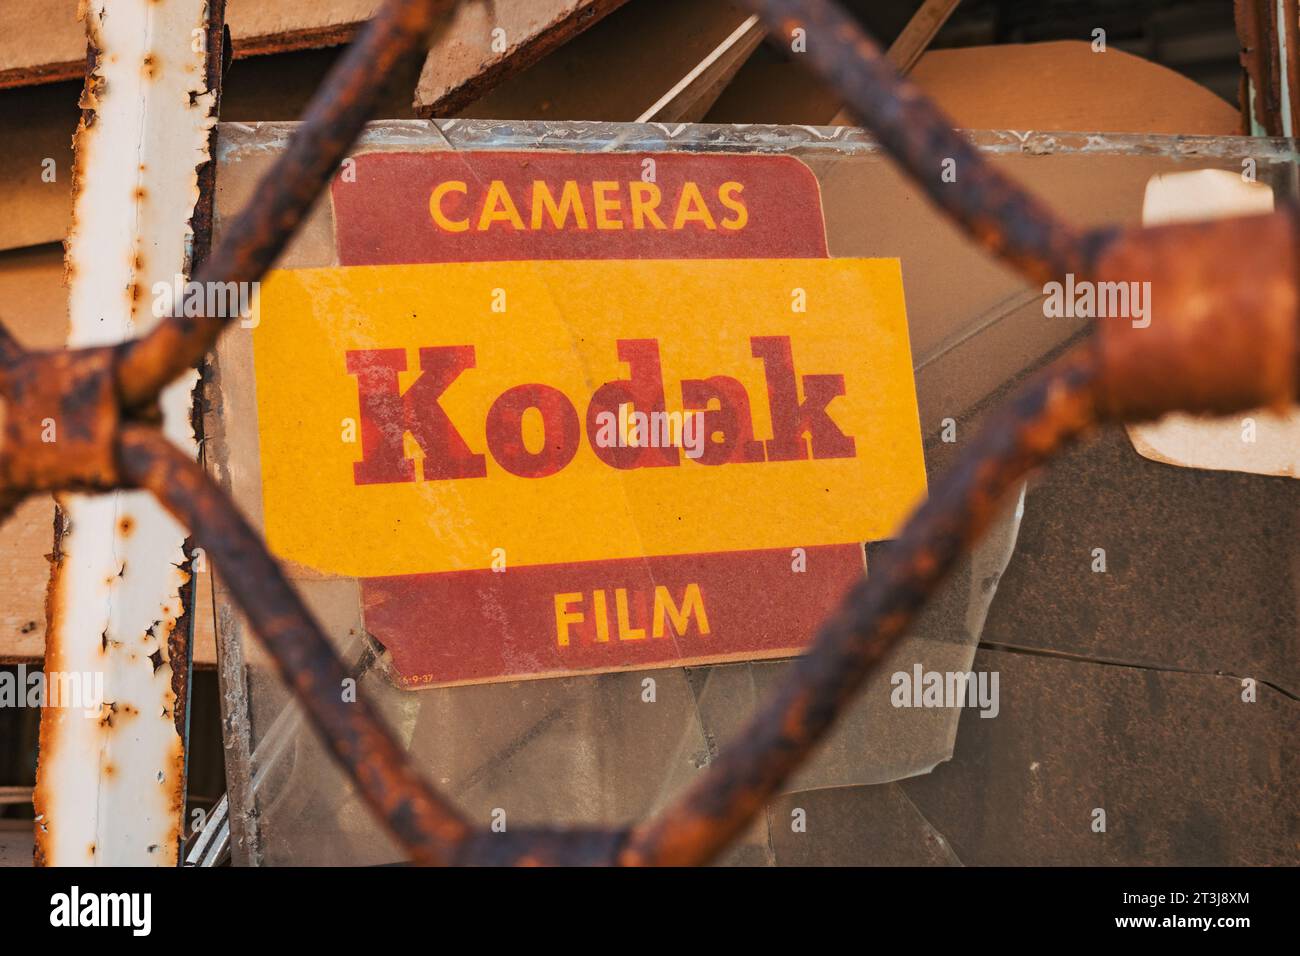 Ein Kodak-Schild in einem alten Kameraladen in Varosha, Nordzypern. Die Stadt wurde 1974 aufgegeben, nachdem sie von türkischen Truppen eingefallen war. Stockfoto